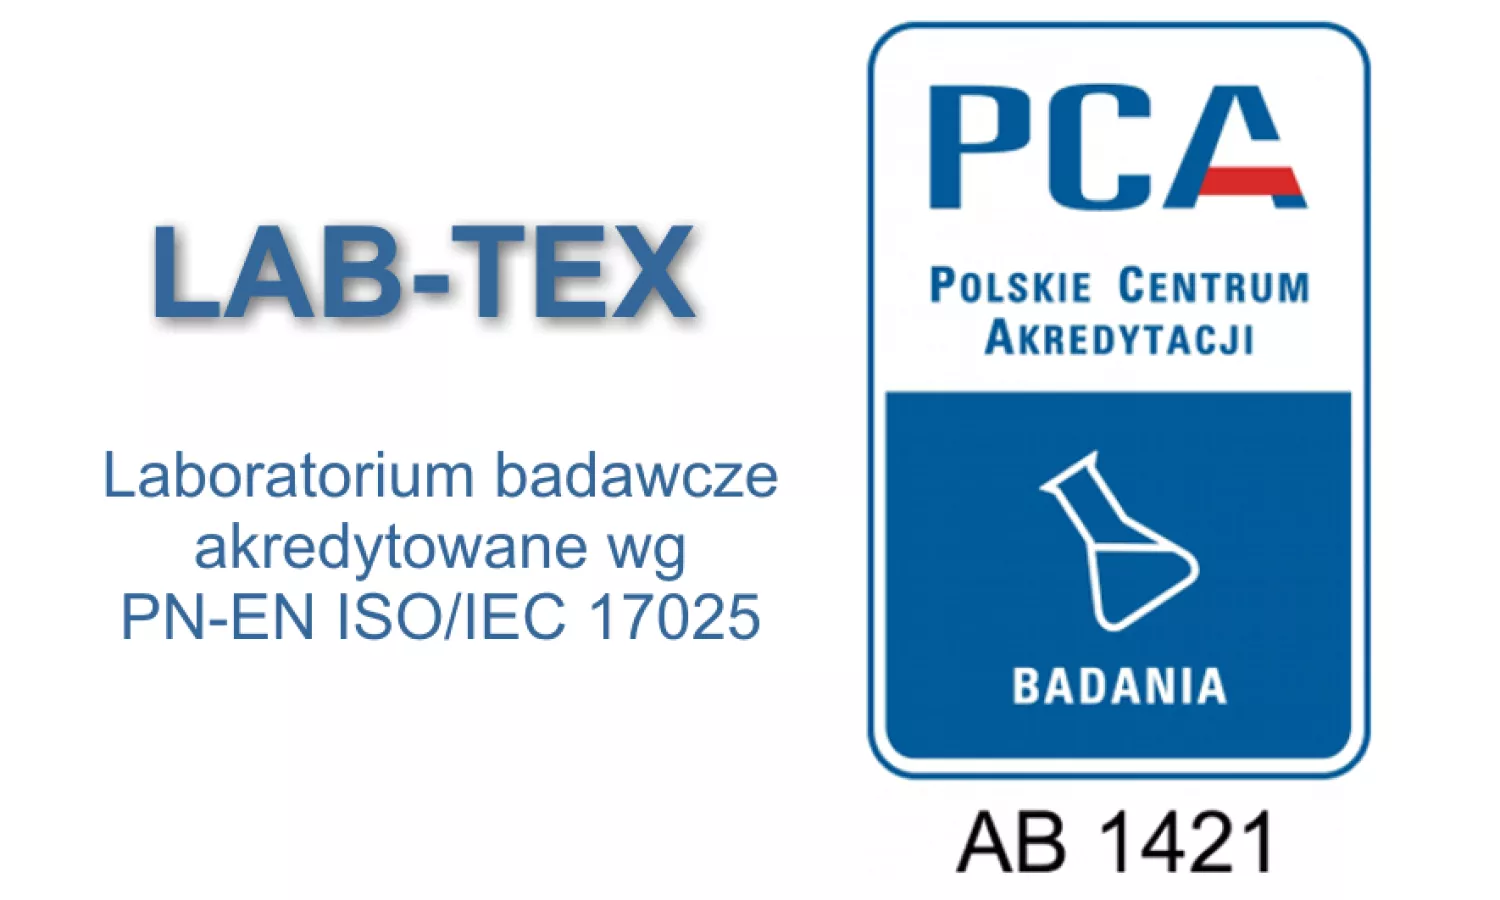 Nazwa i grafika certyfikatu laboratorium LAB-TEX